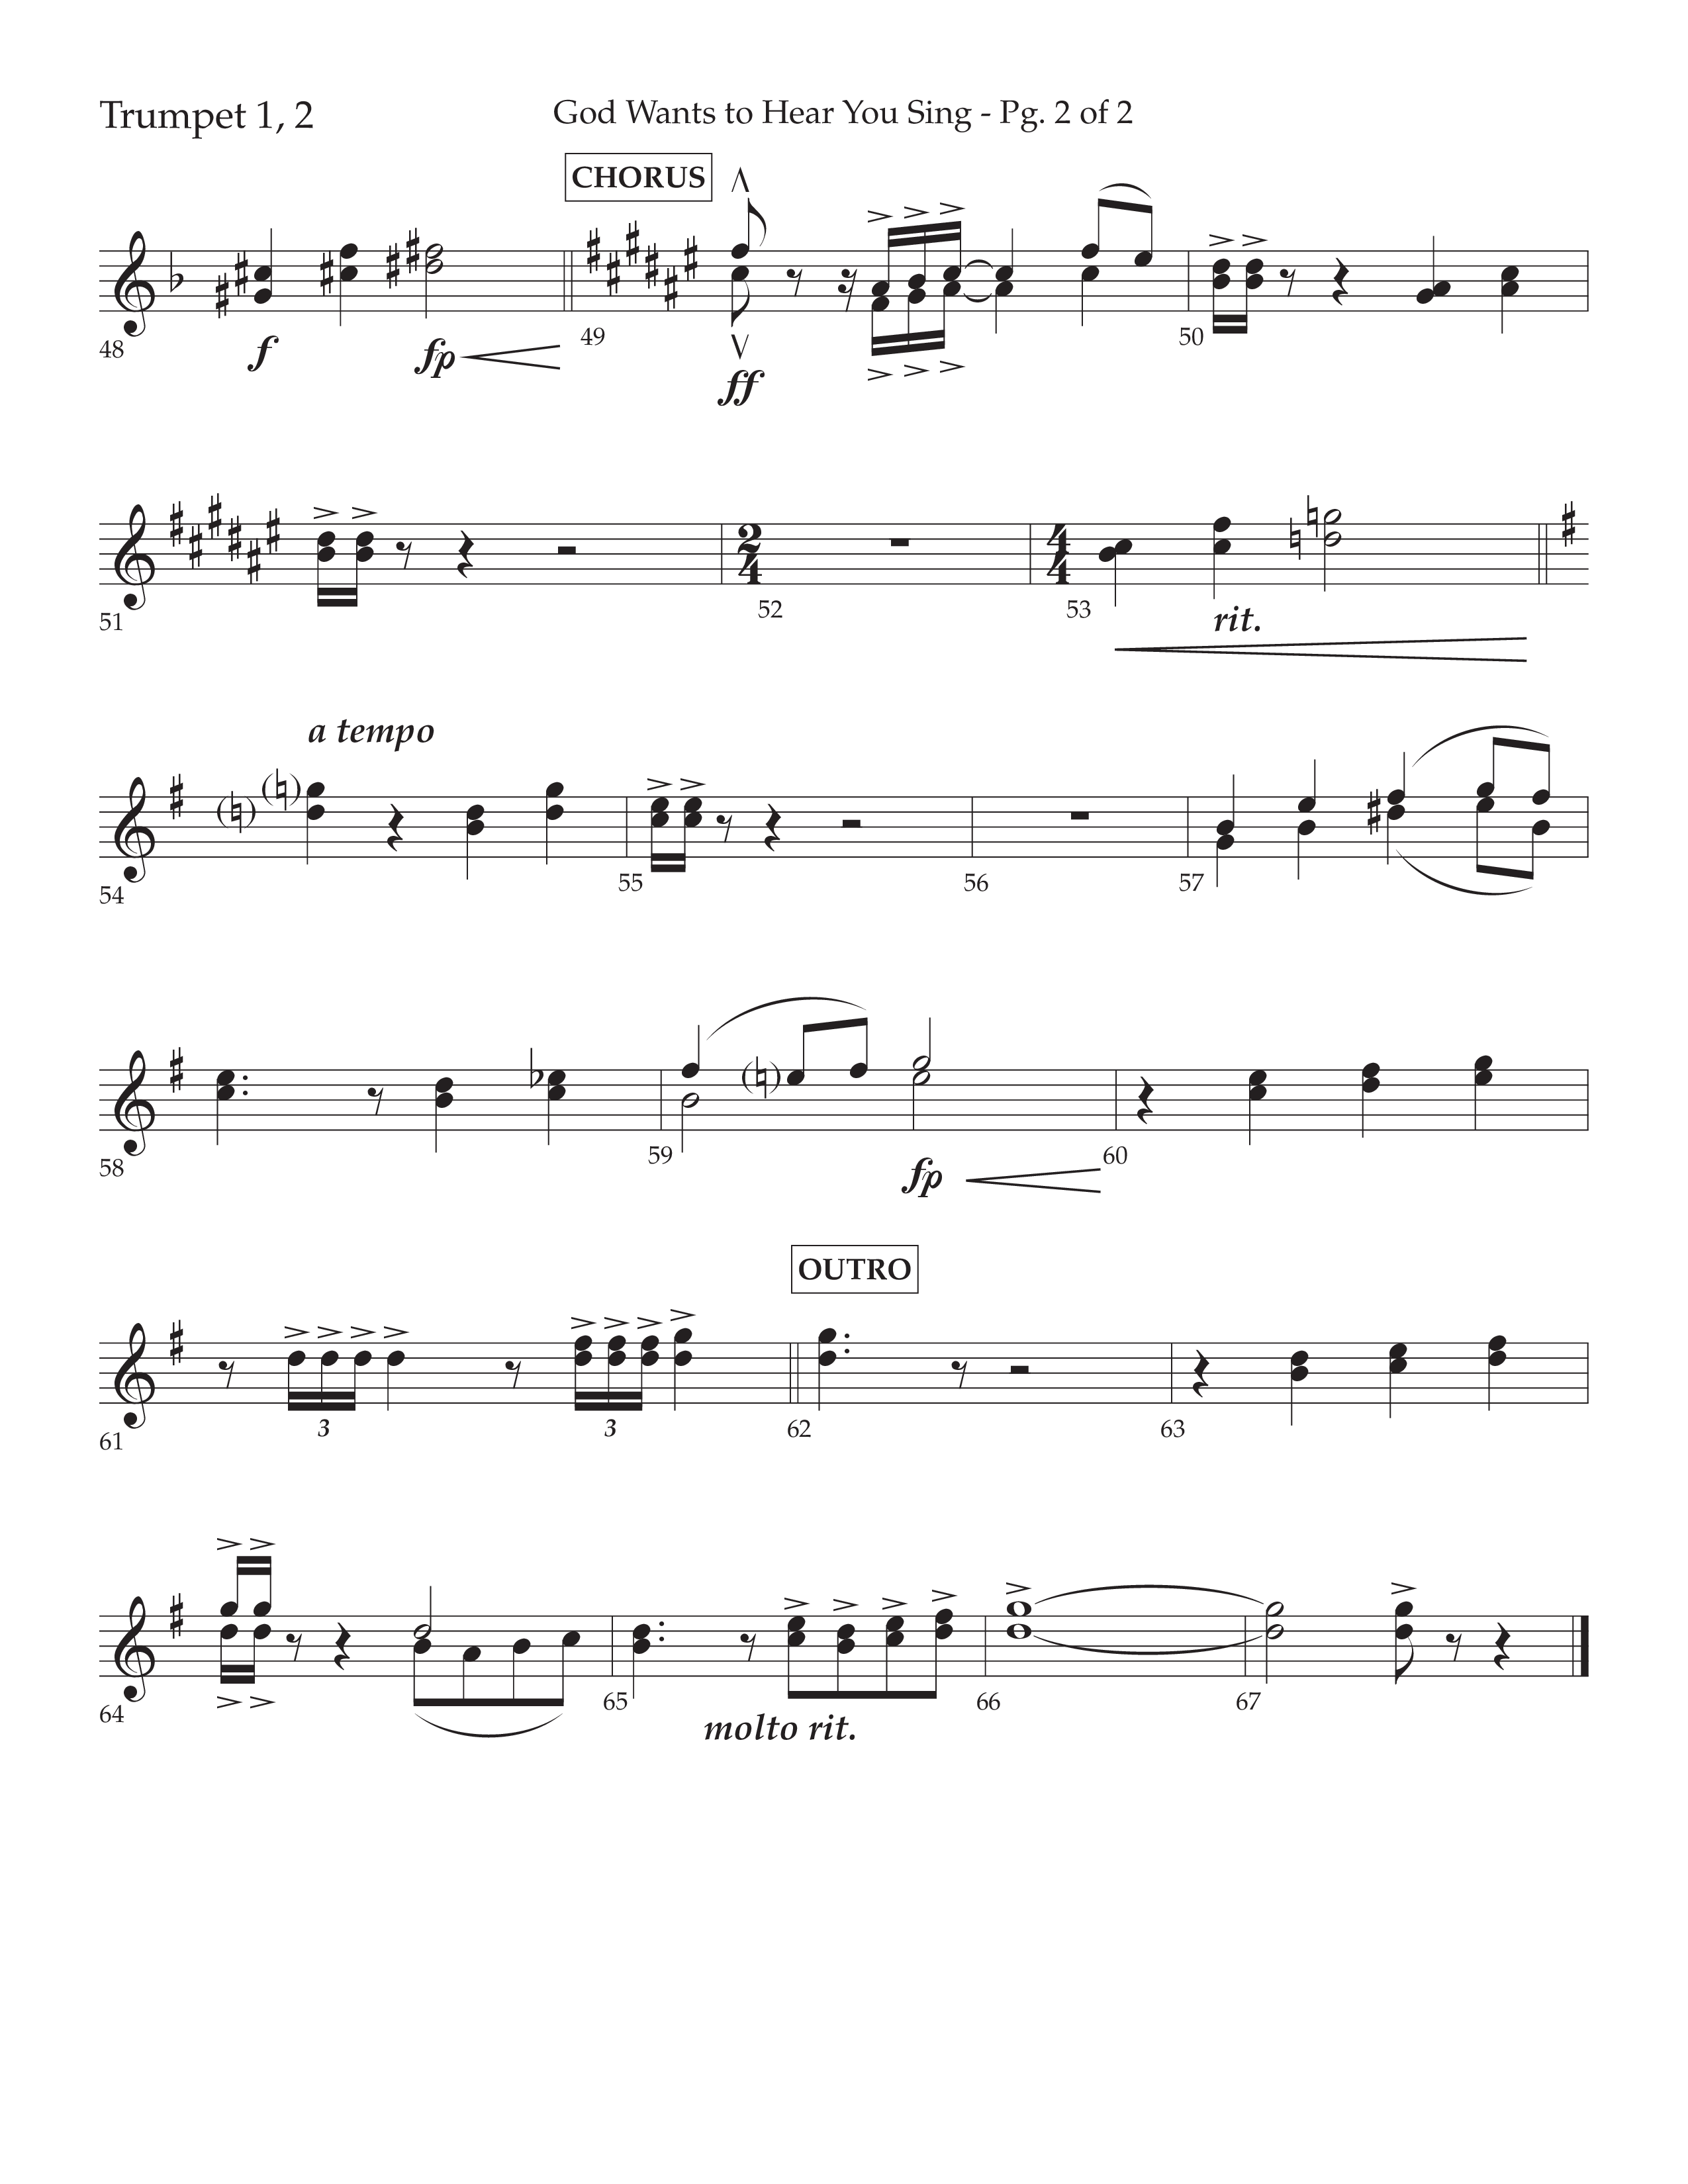 God Wants To Hear You Sing (Choral Anthem SATB) Trumpet 1,2 (Lifeway Choral / Arr. Bradley Knight)